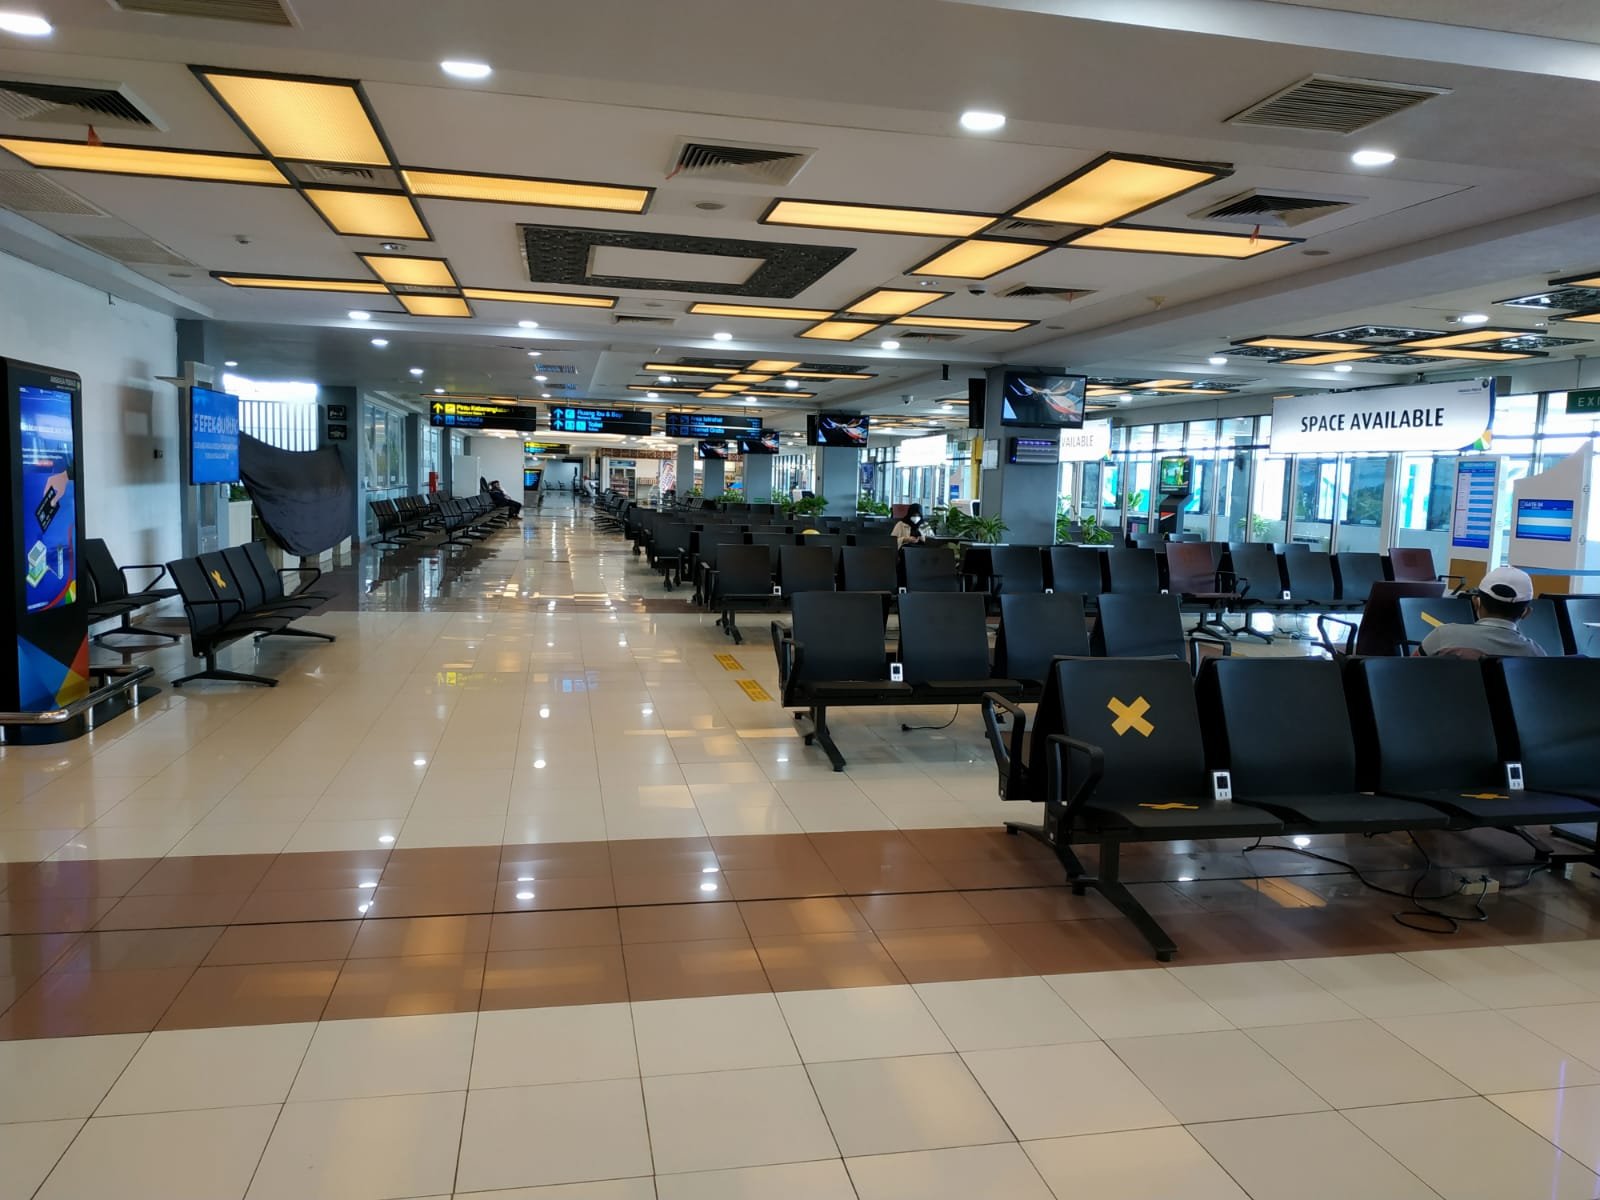 Menyikapi Addendum SE 13 Tahun 2021, Bandara Internasional Minangkabau Laksanakan Rakor